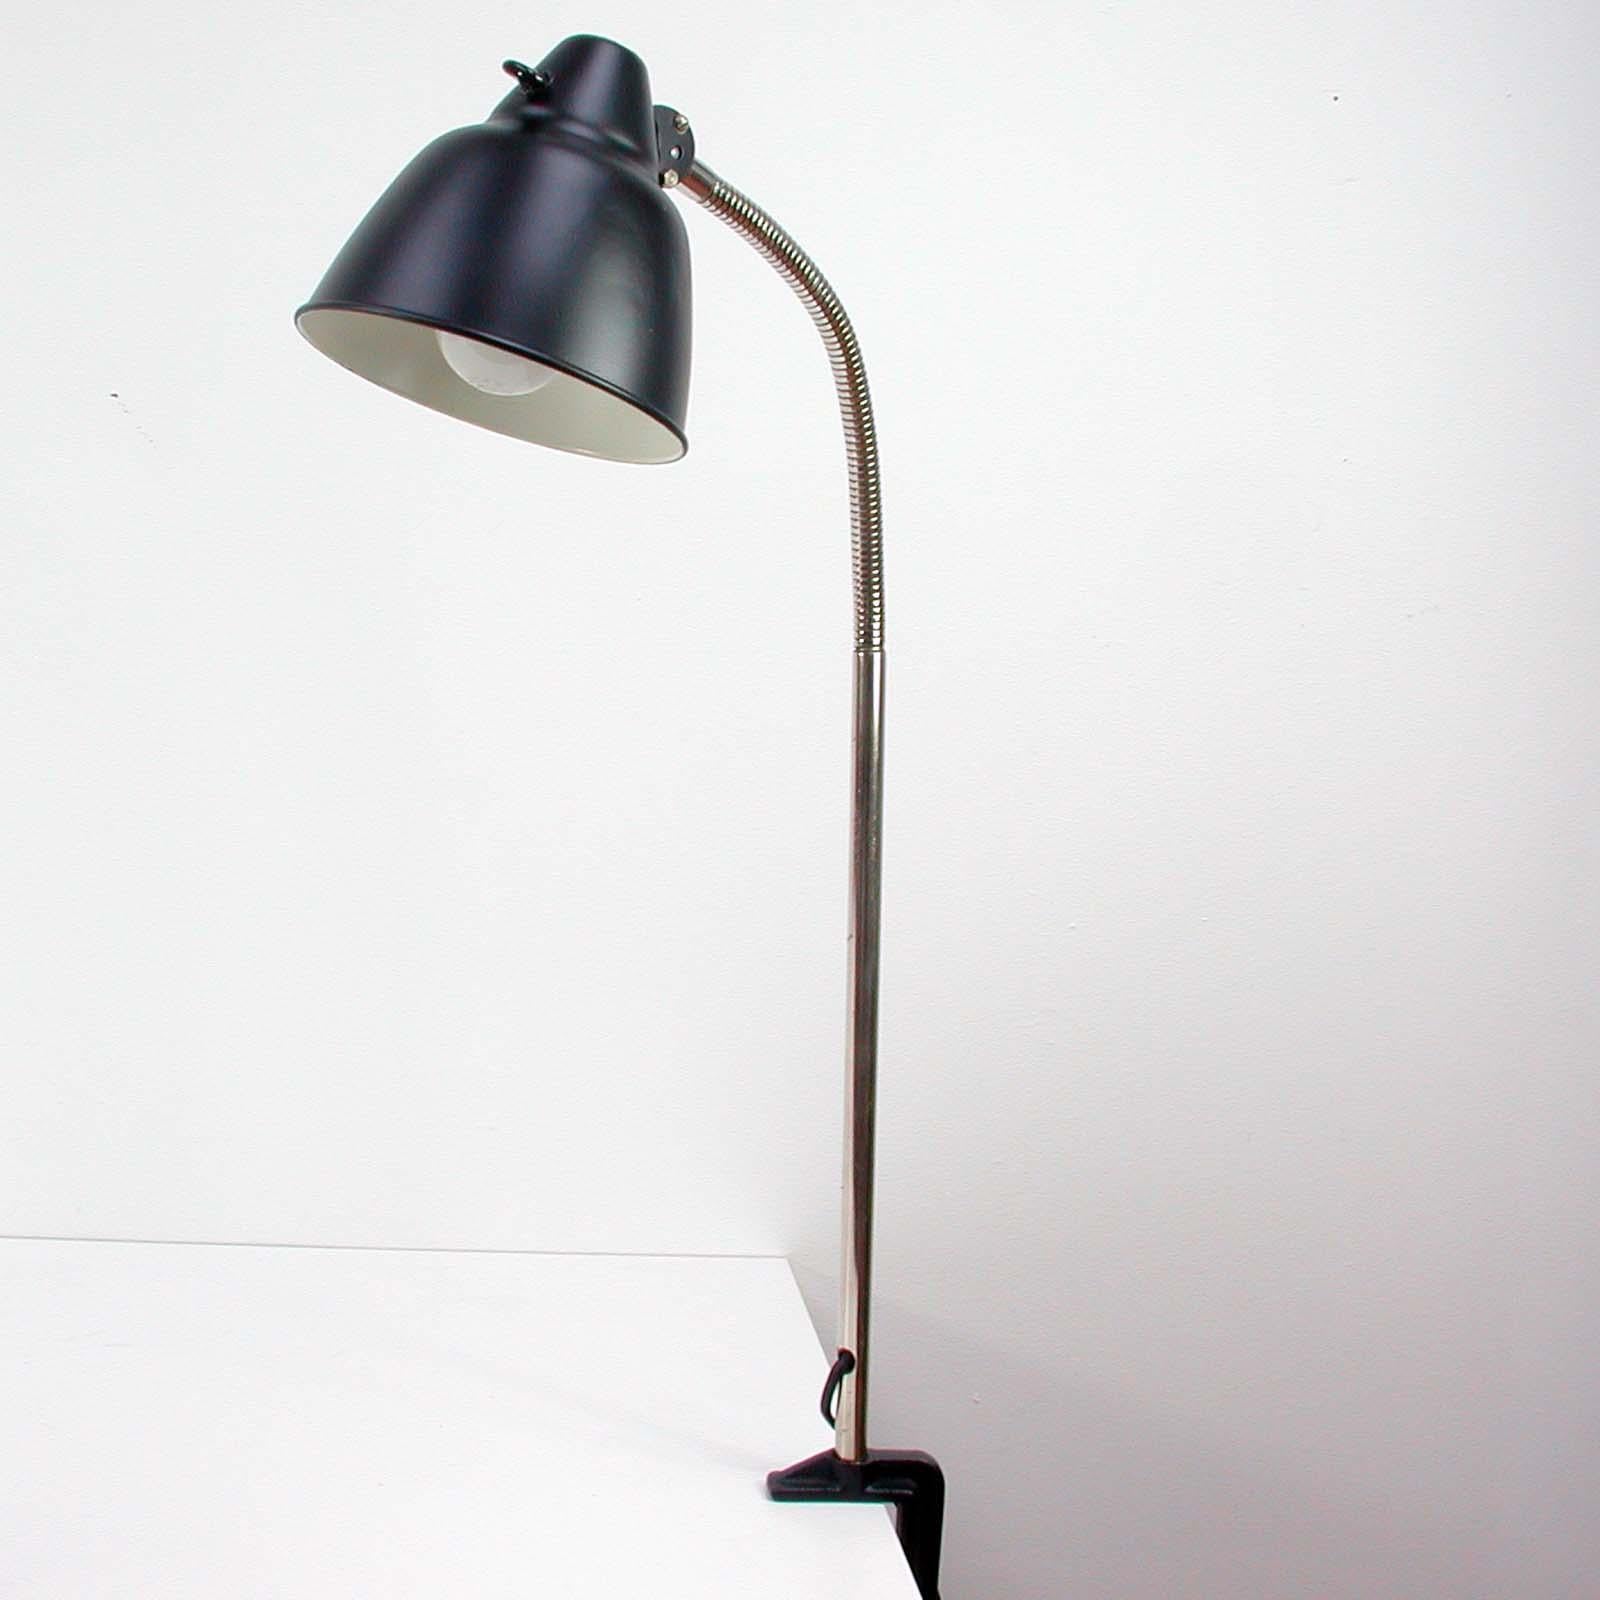 Cette lampe de bureau vintage a été conçue et fabriquée par HELO à Neuburg dans les années 1950.

La lampe est dotée d'un abat-jour en aluminium et d'un bras flexible en col de cygne chromé. L'interrupteur en bakélite est situé sur l'abat-jour. La